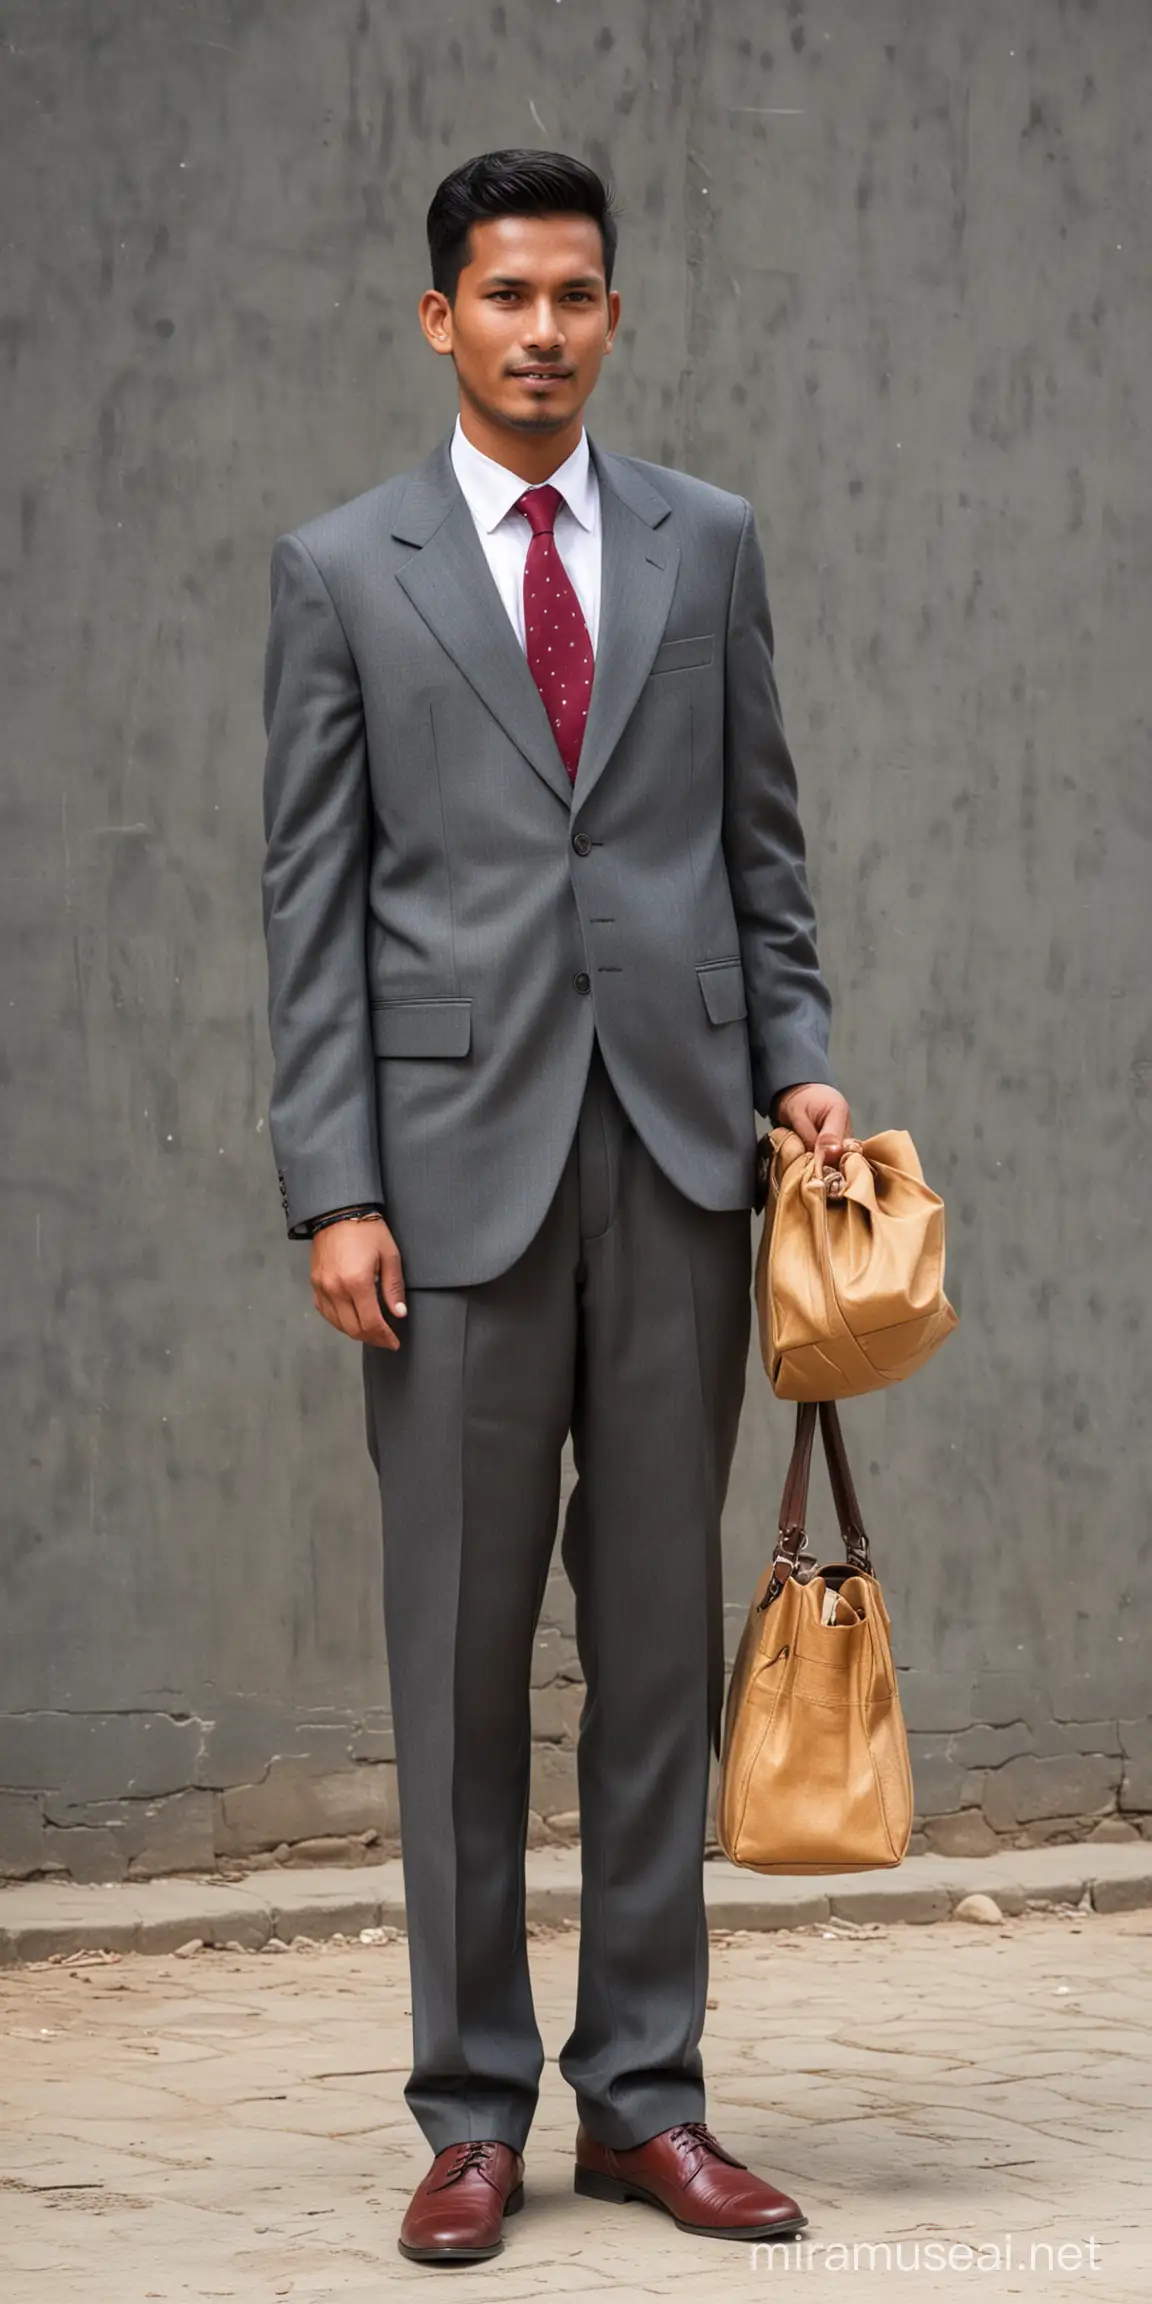 A Nepali man in suit dress 
Wearing bag 